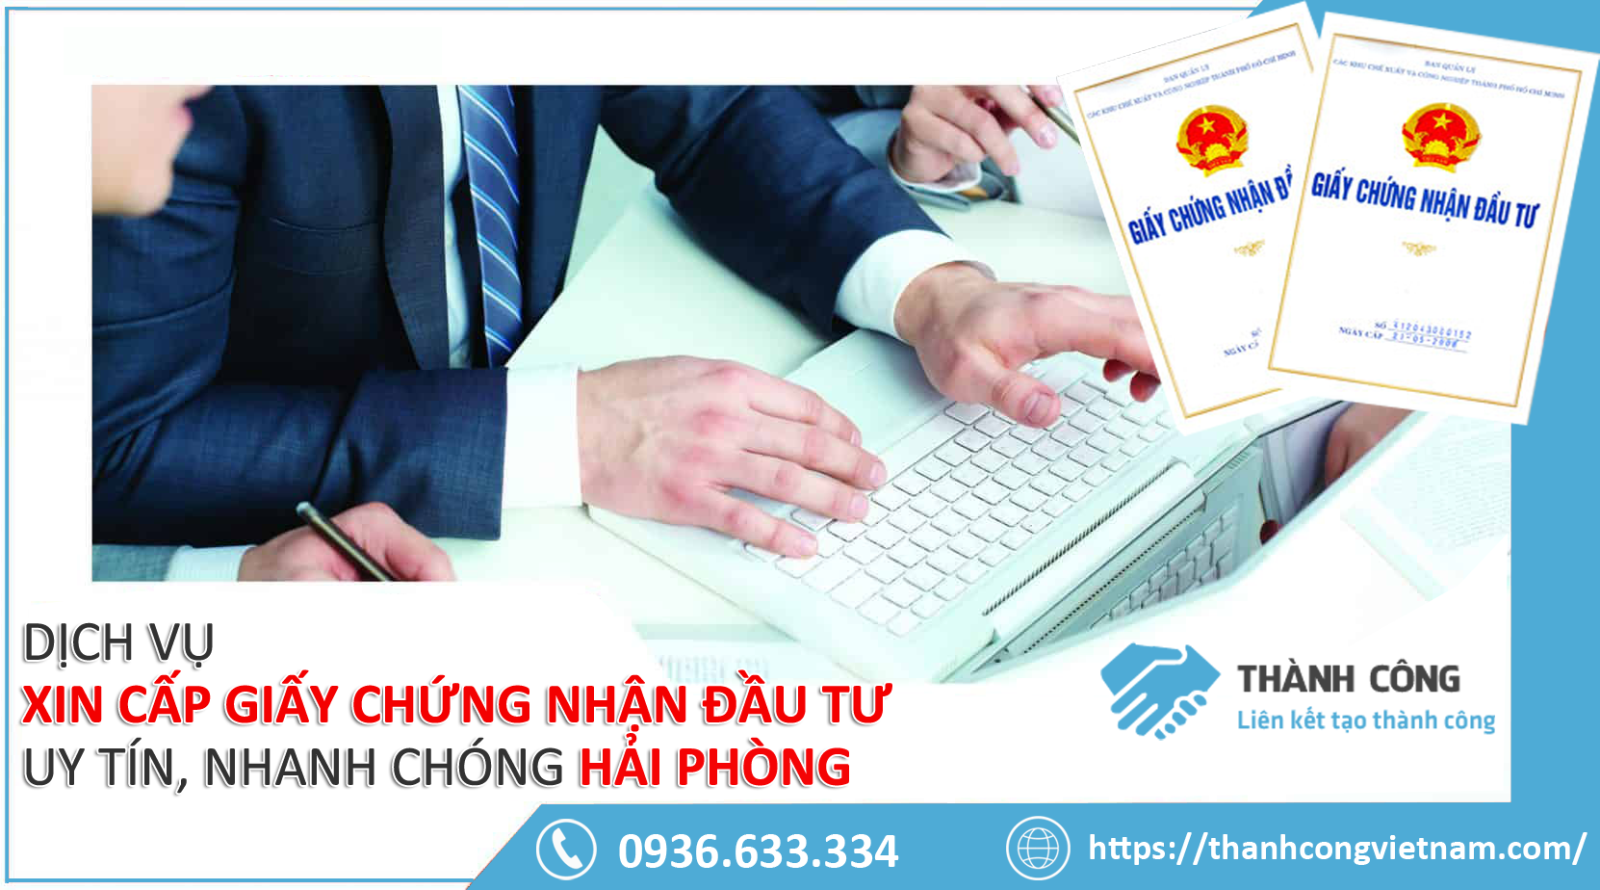 Dịch vụ xin cấp giấy chứng nhận đầu tư trọn gói, uy tín chỉ có tại Thành Công Việt Nam